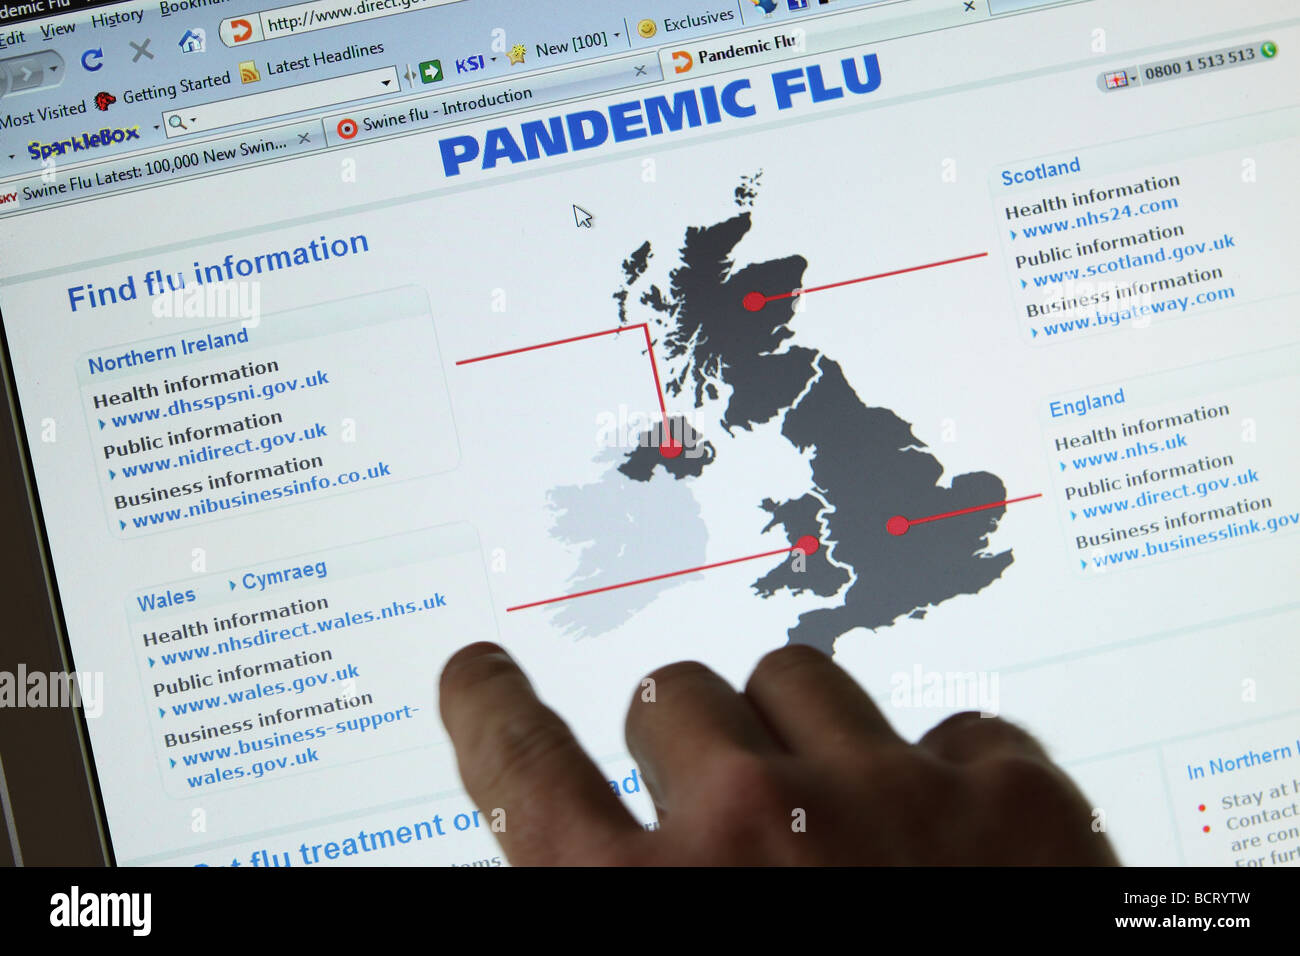 Grippe porcine H1N1 de la pandémie de grippe du Gouvernement britannique a été mis en ligne sur le site web d'information 24.7.09 Capture d'écran Banque D'Images